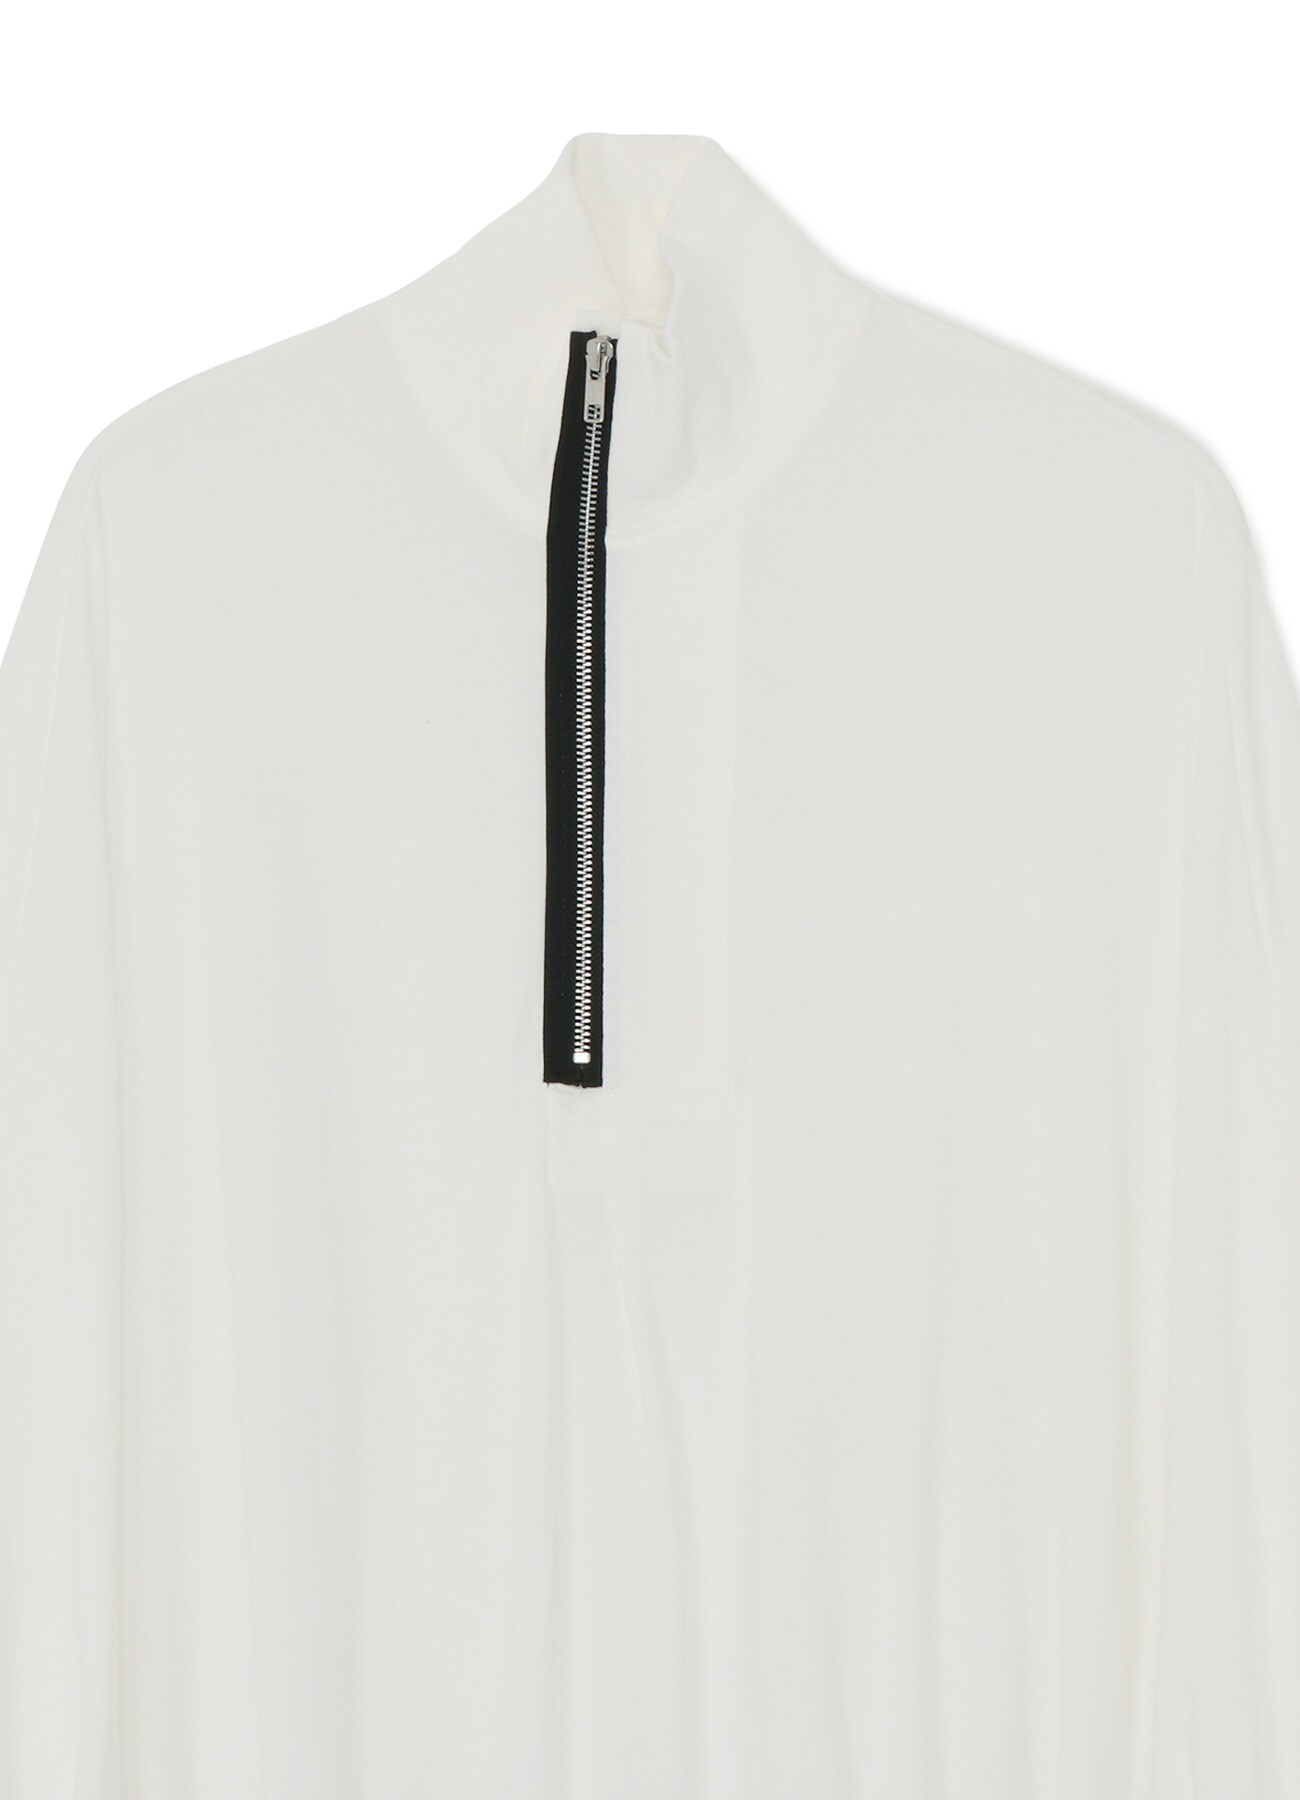 30/cotton jersey Zipper stand collar cut sew